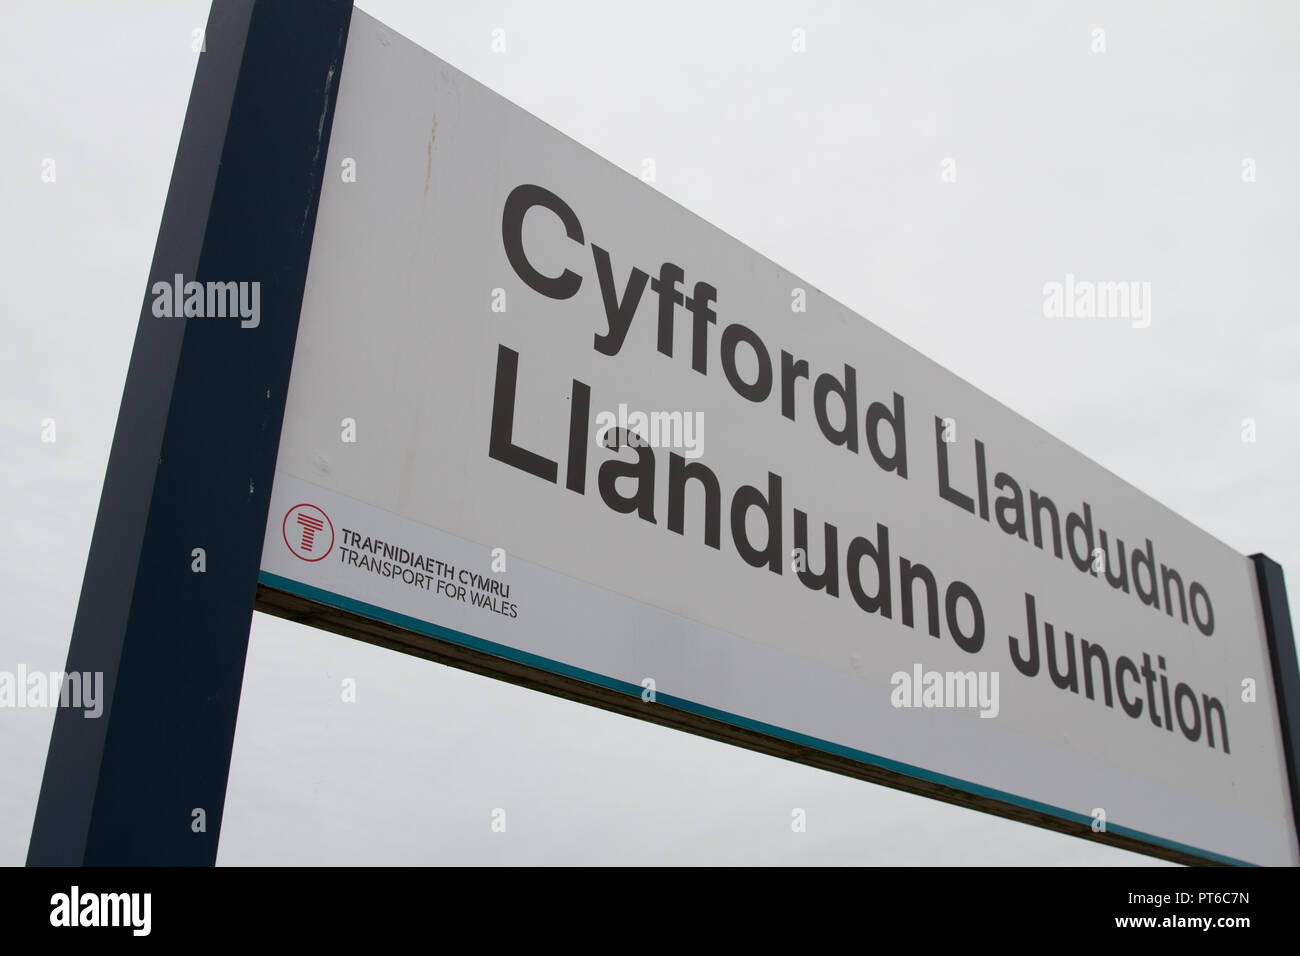 Llandudno Junction Railway Station in Wales Zeichen gegen einen grauen Himmel Übersicht Transport für Wales Marke durch die neue Bahn Fahrer Keolis Amey. Stockfoto